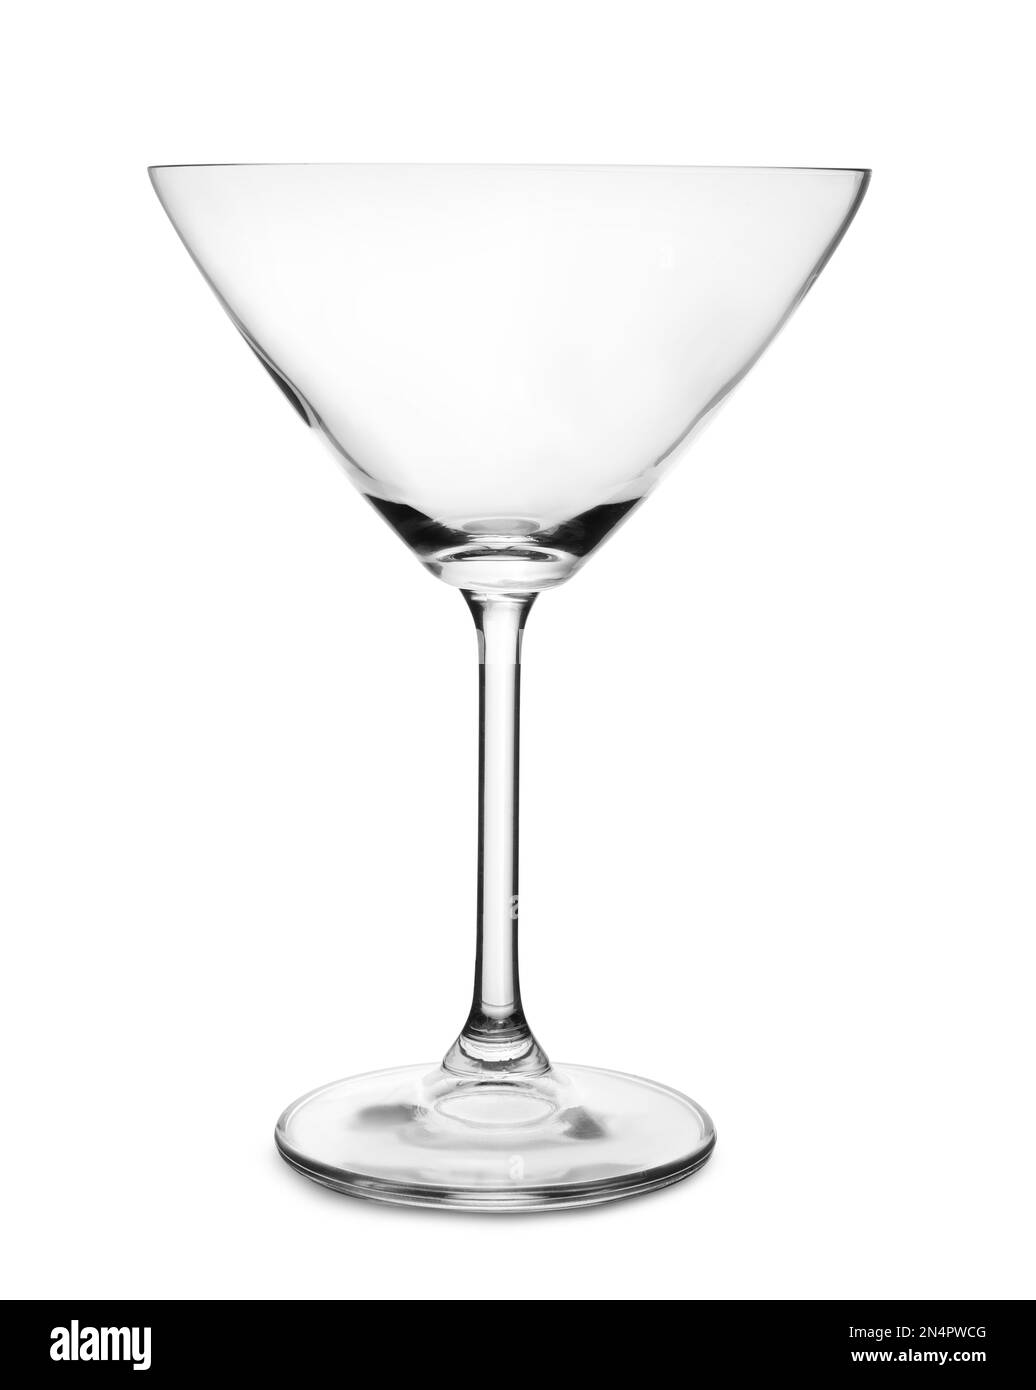 Pulire il vetro martini vuoto su sfondo bianco Foto Stock